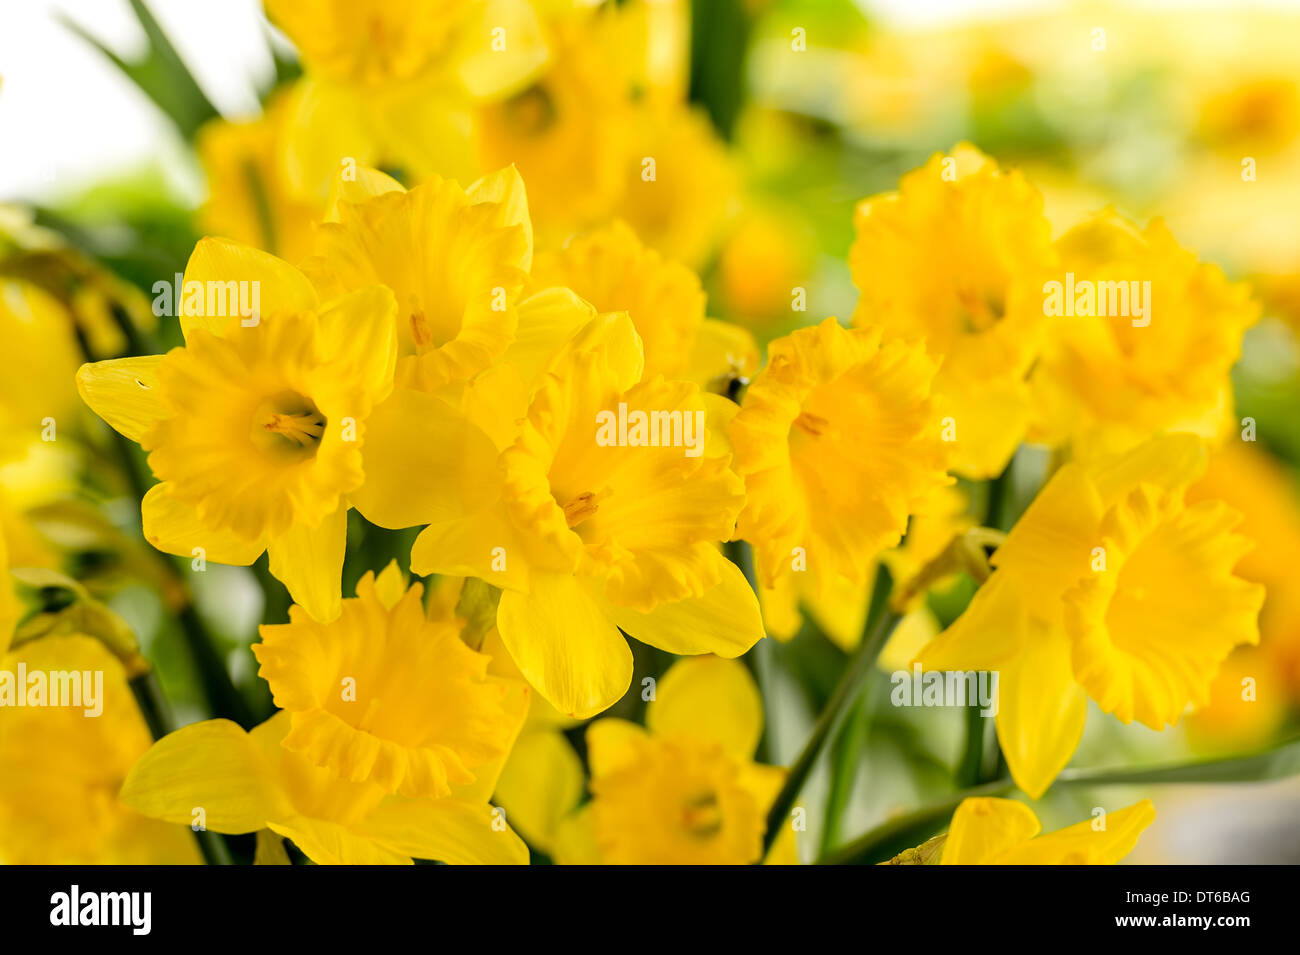 Dettaglio del narciso giallo fiore di primavera Foto Stock